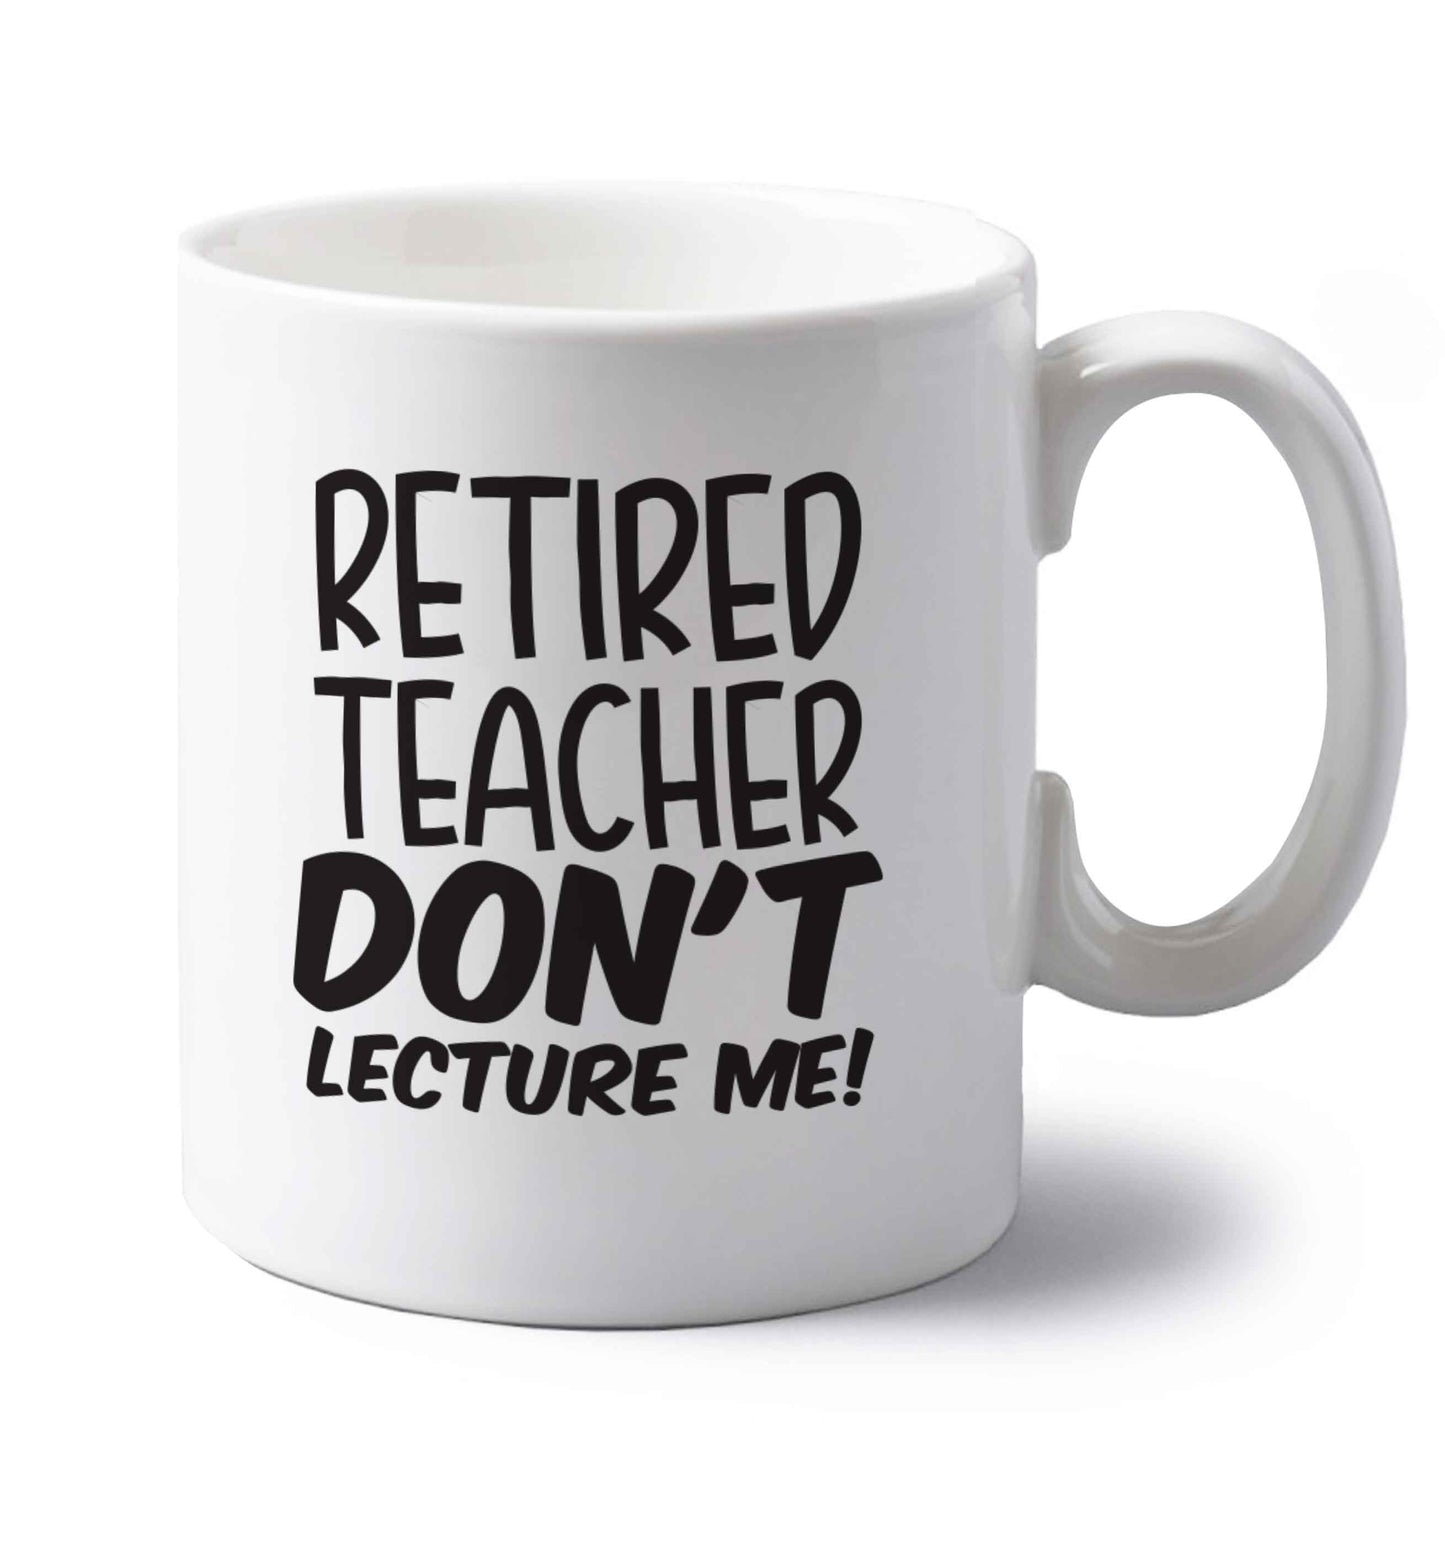 Retired teacher don't lecture me! left handed white ceramic mug 